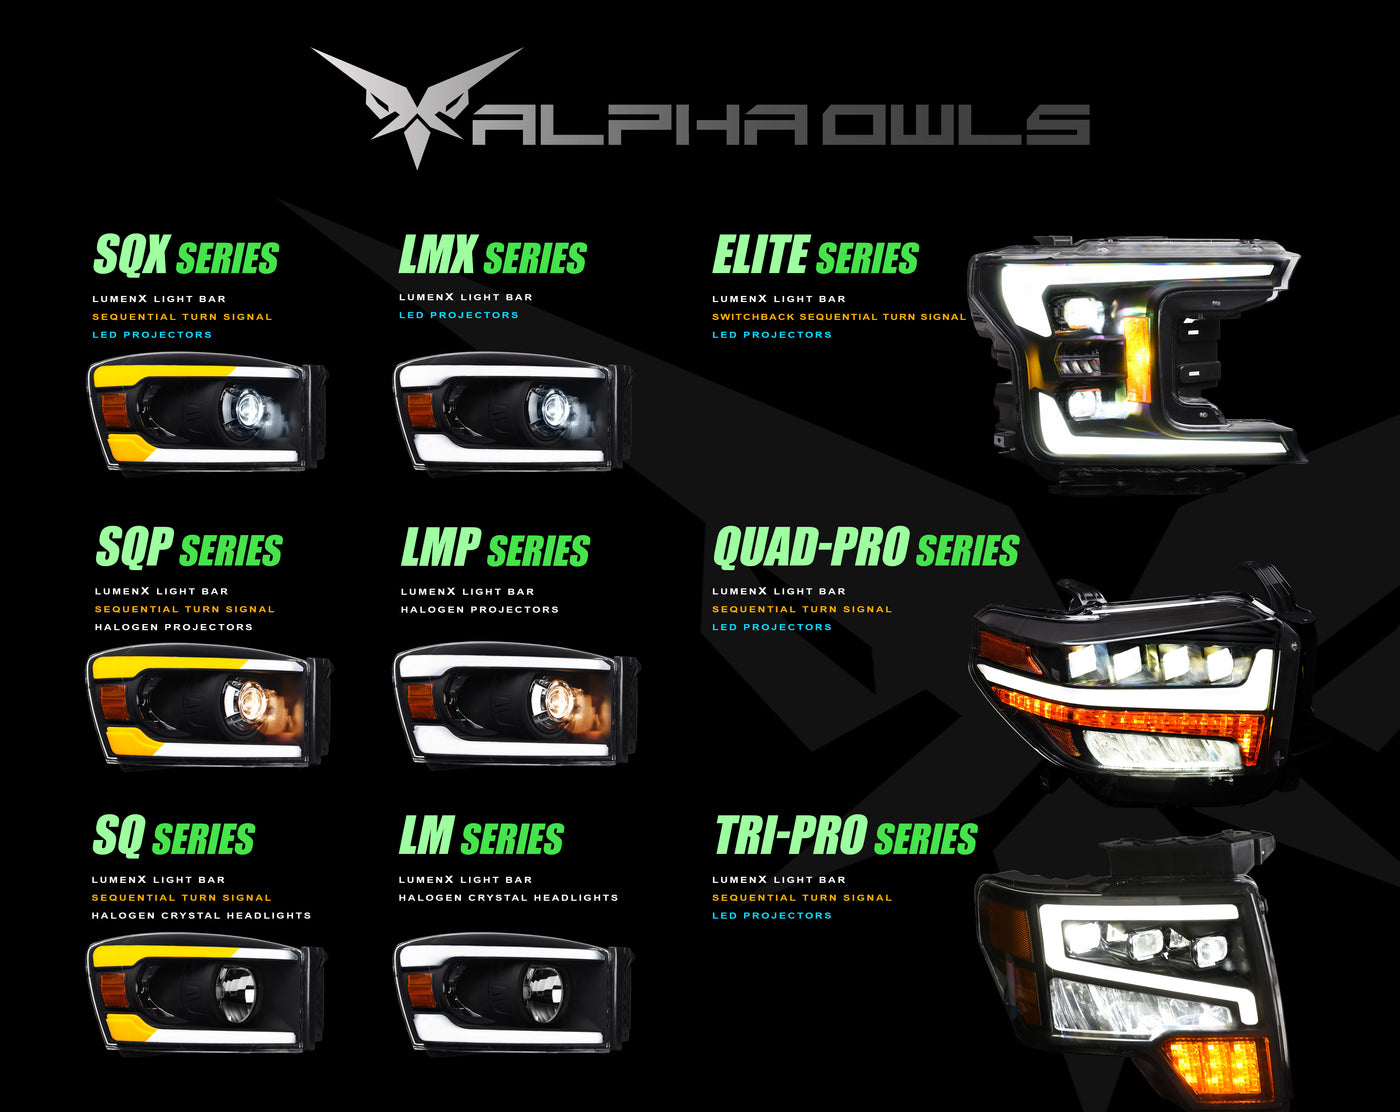 Alpha Owls Headlights, Alpha Owls GMC Headlights, GMC 2007-2013 Headlights, GMC Sierra 1500 Headlights, LED Projector Headlights, GMC Sierra Headlights